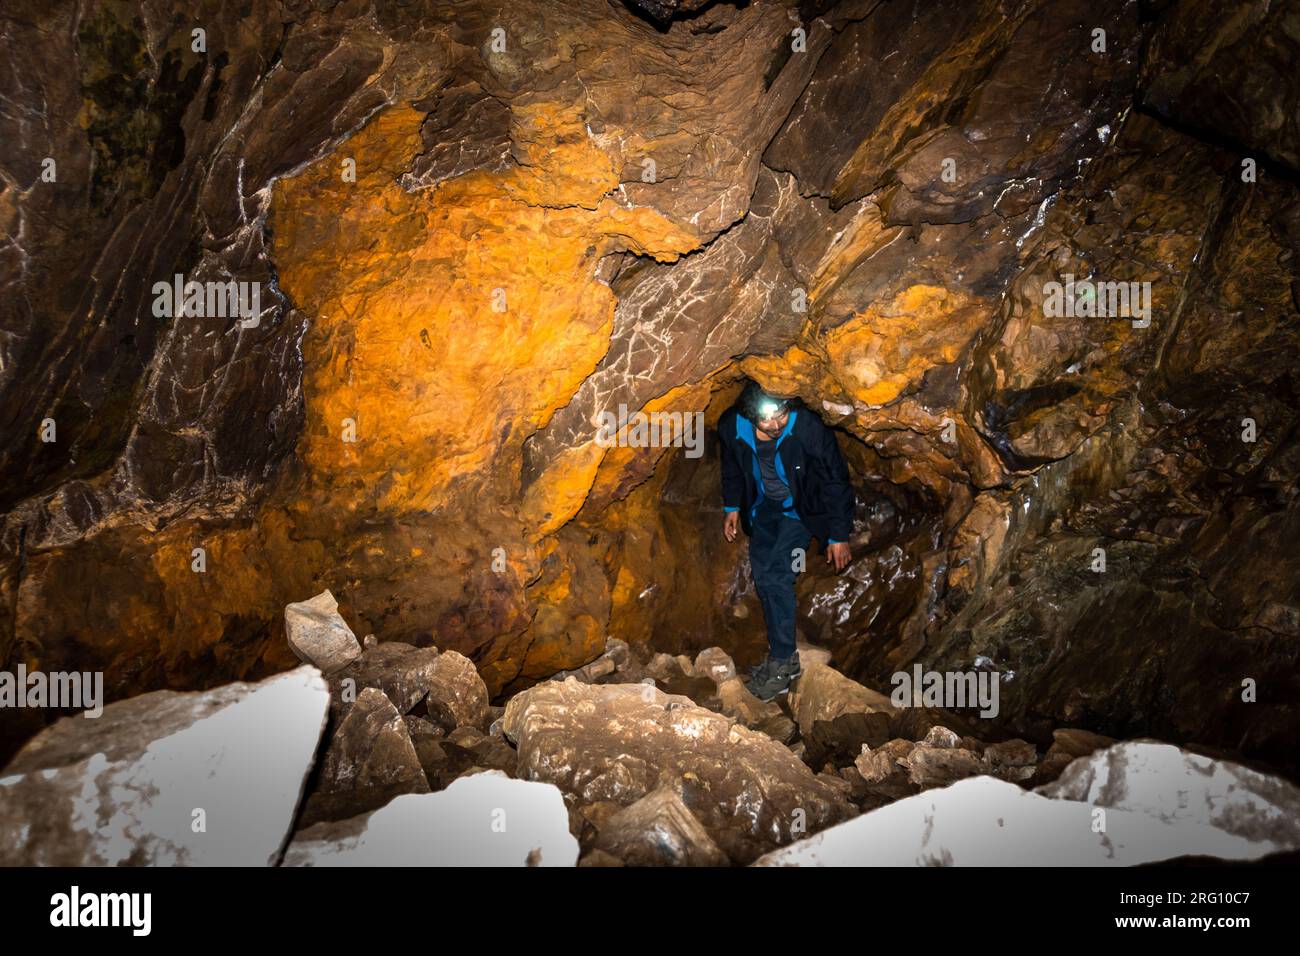 14 octobre 2022, Uttarakhand Inde. Jeune explorateur avec lampe frontale, s'aventurant profondément dans une grotte de l'Himalaya à Uttarakhand. Adresse souterraine palpitante Banque D'Images